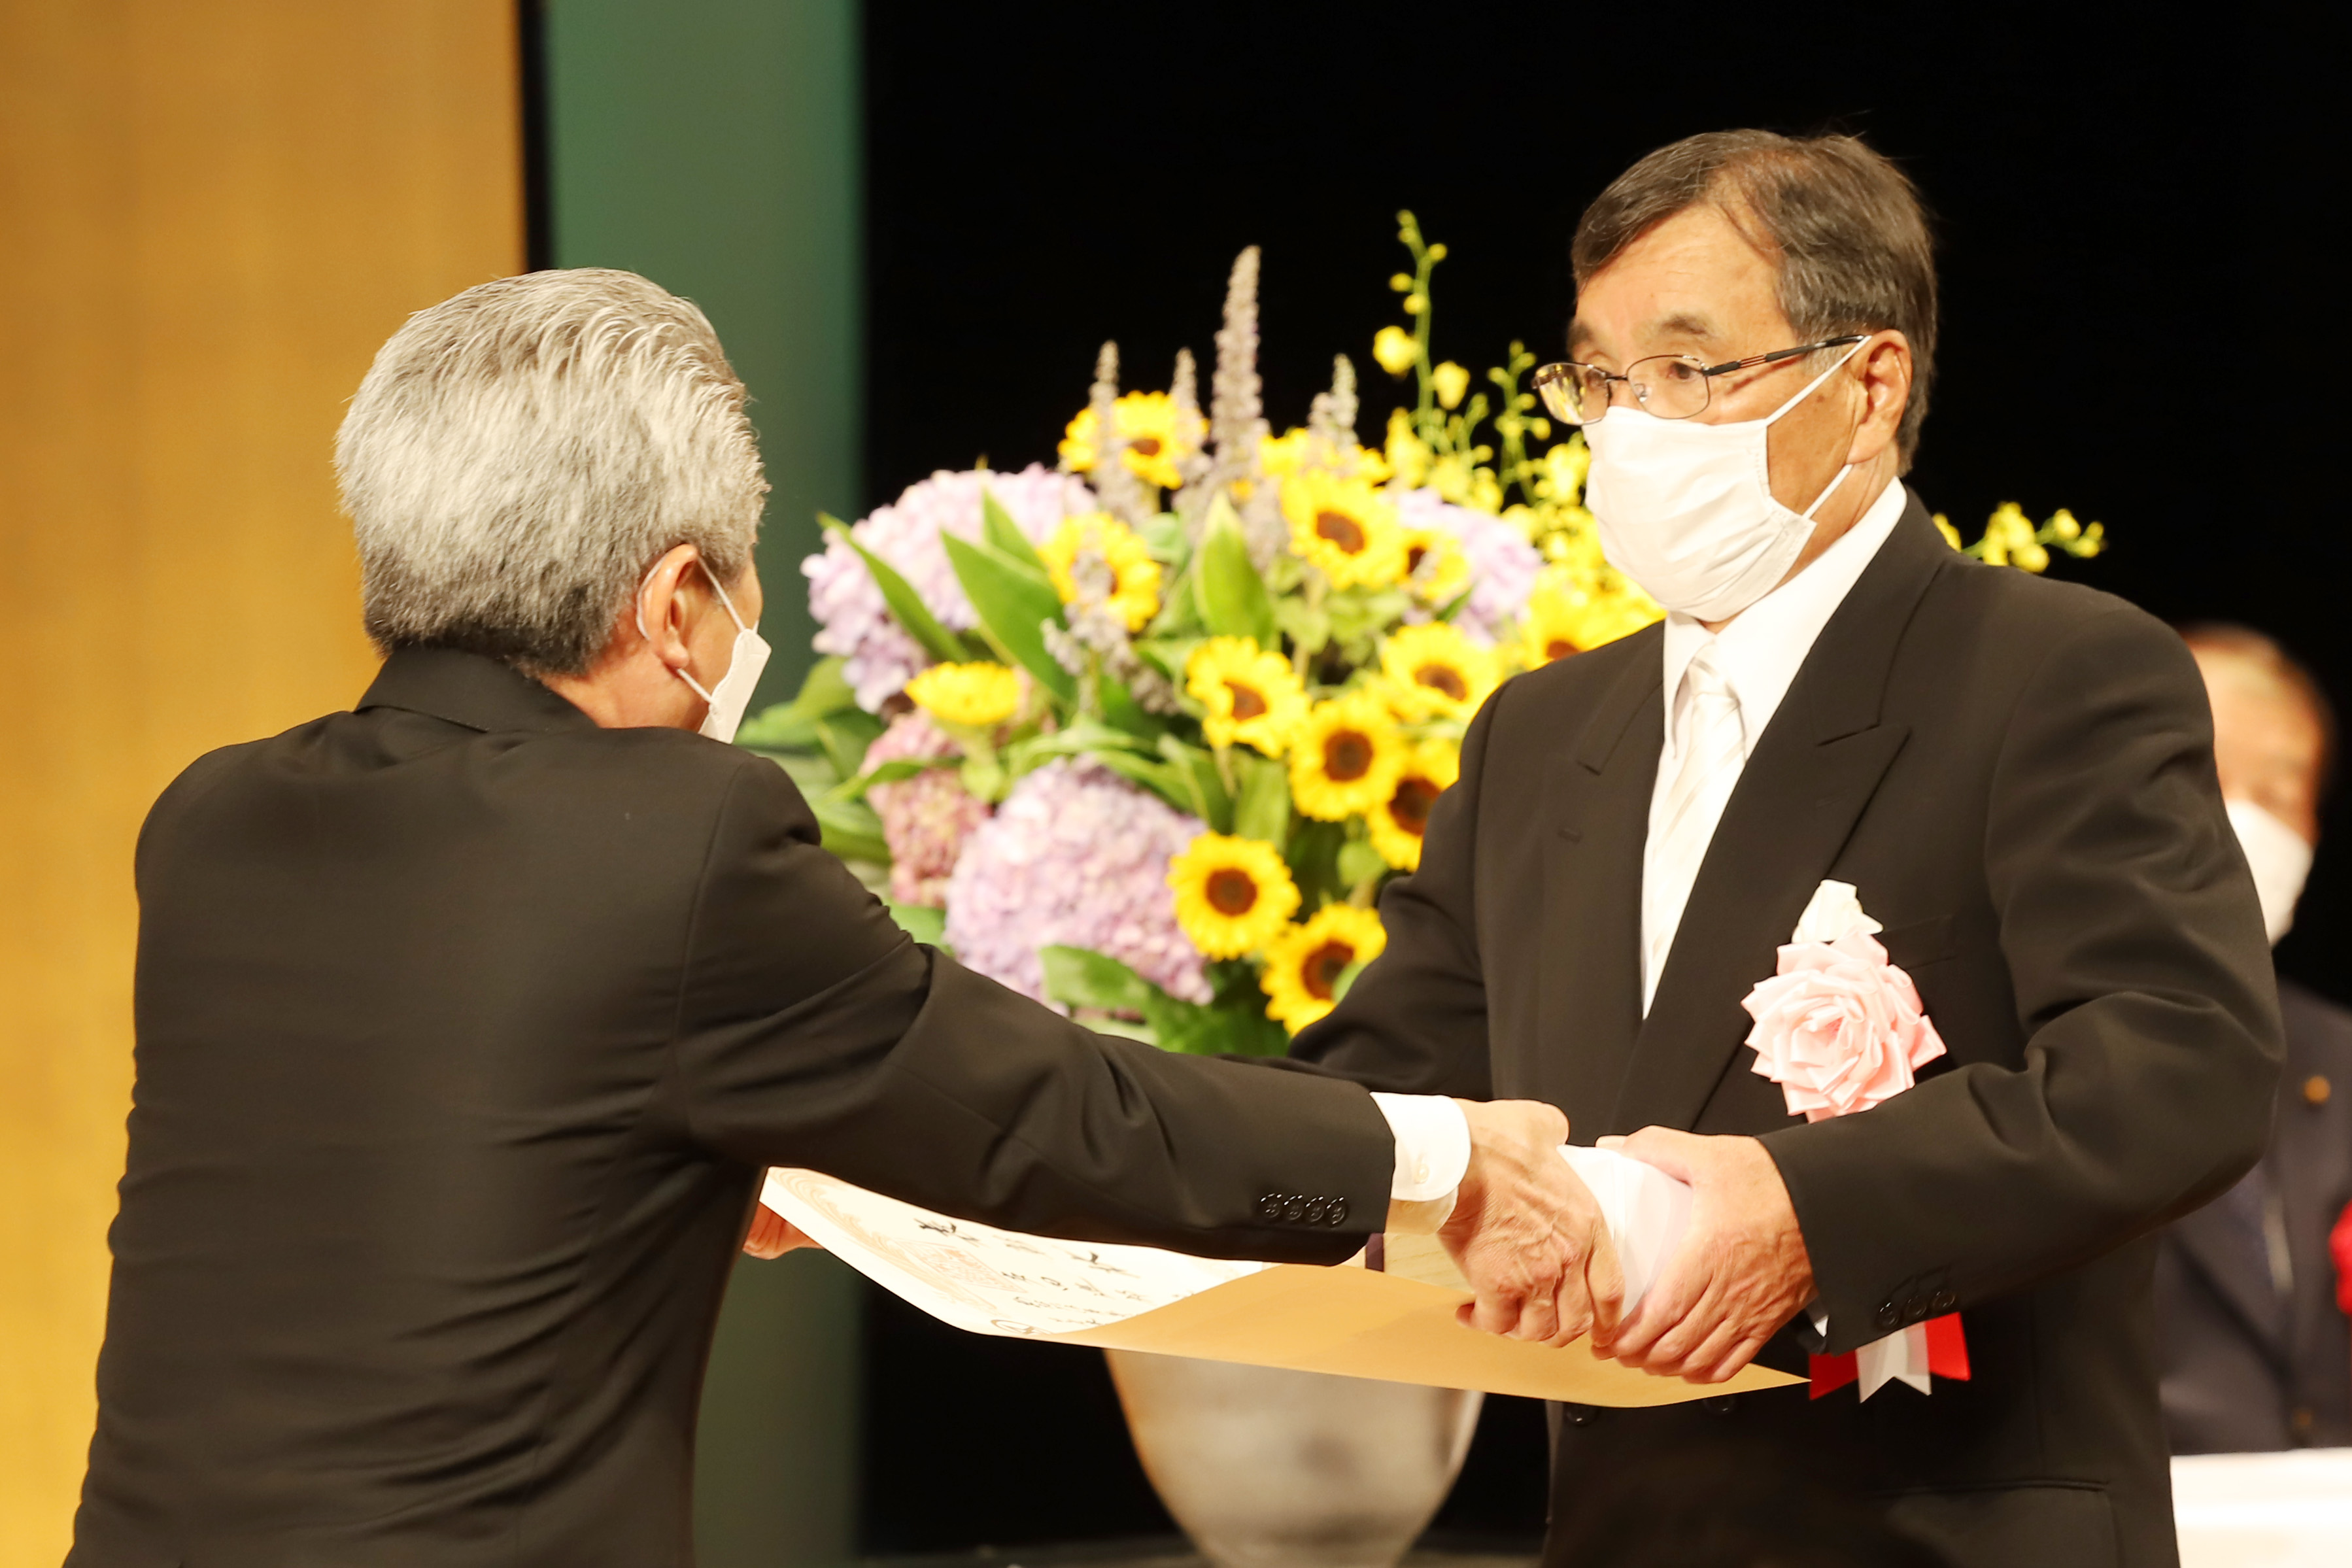 功労者表彰を受賞した多田さんの画像